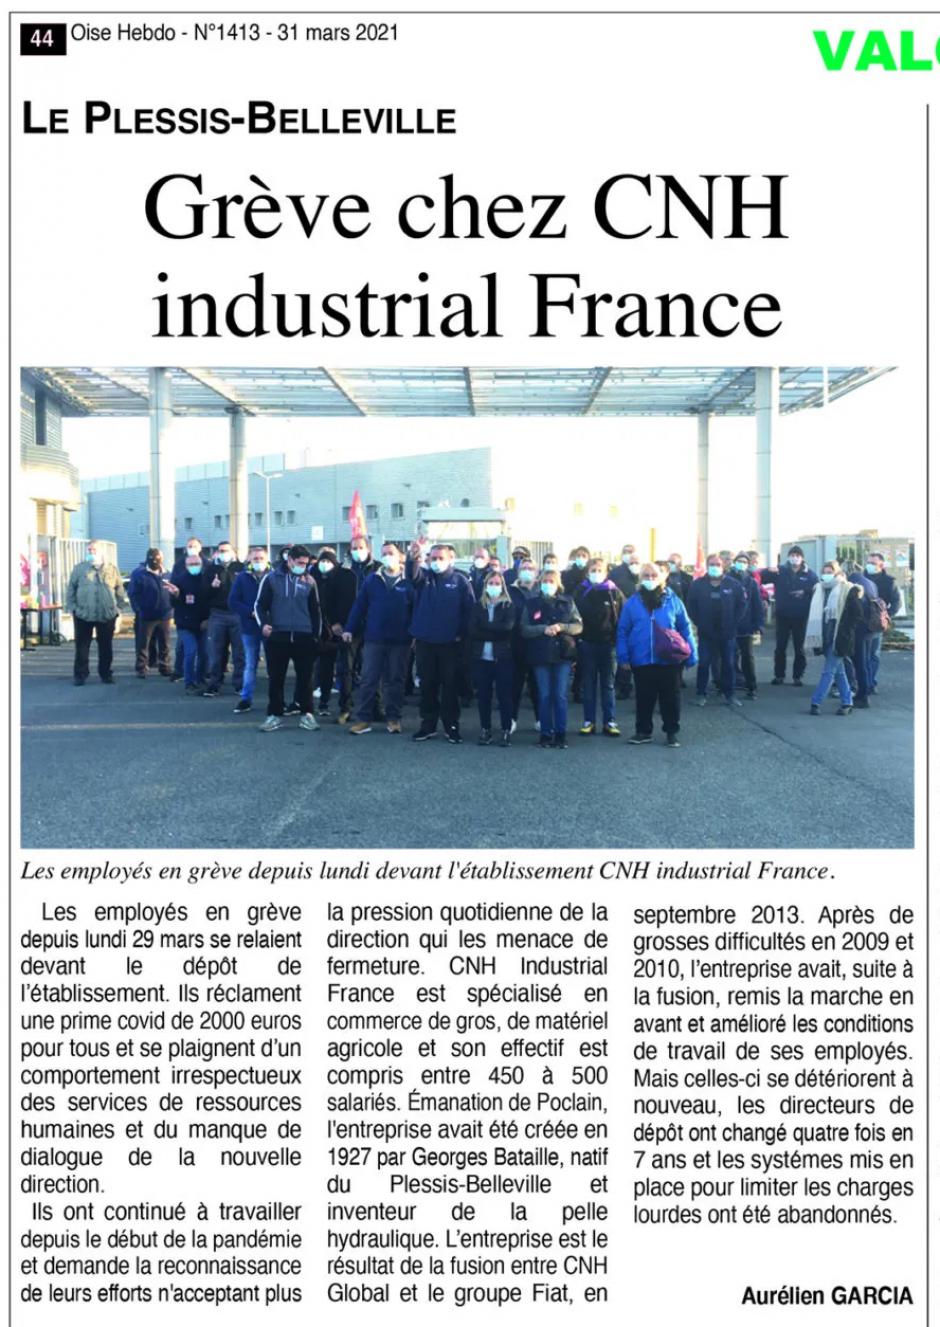 20210331-OH-Le Plessis-Belleville-Grève chez CNH Industrial France